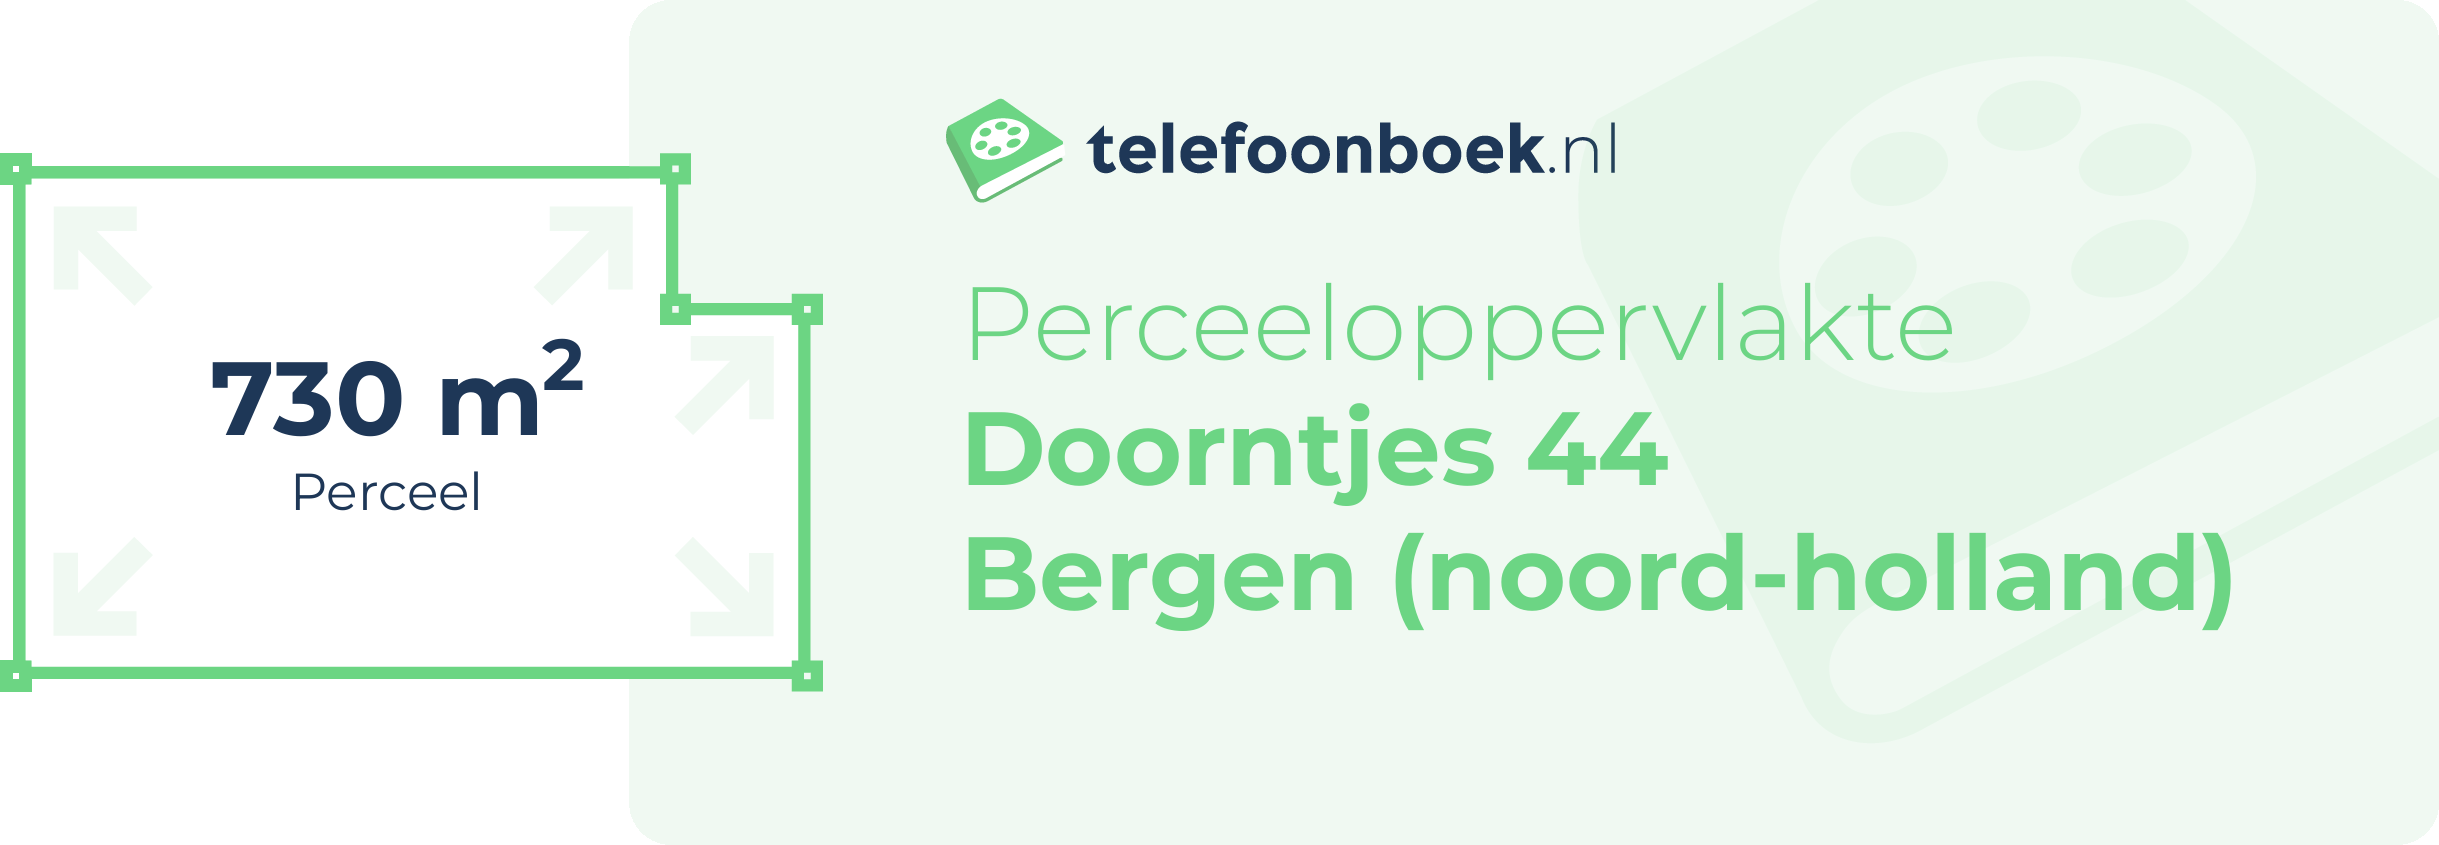 Perceeloppervlakte Doorntjes 44 Bergen (Noord-Holland)